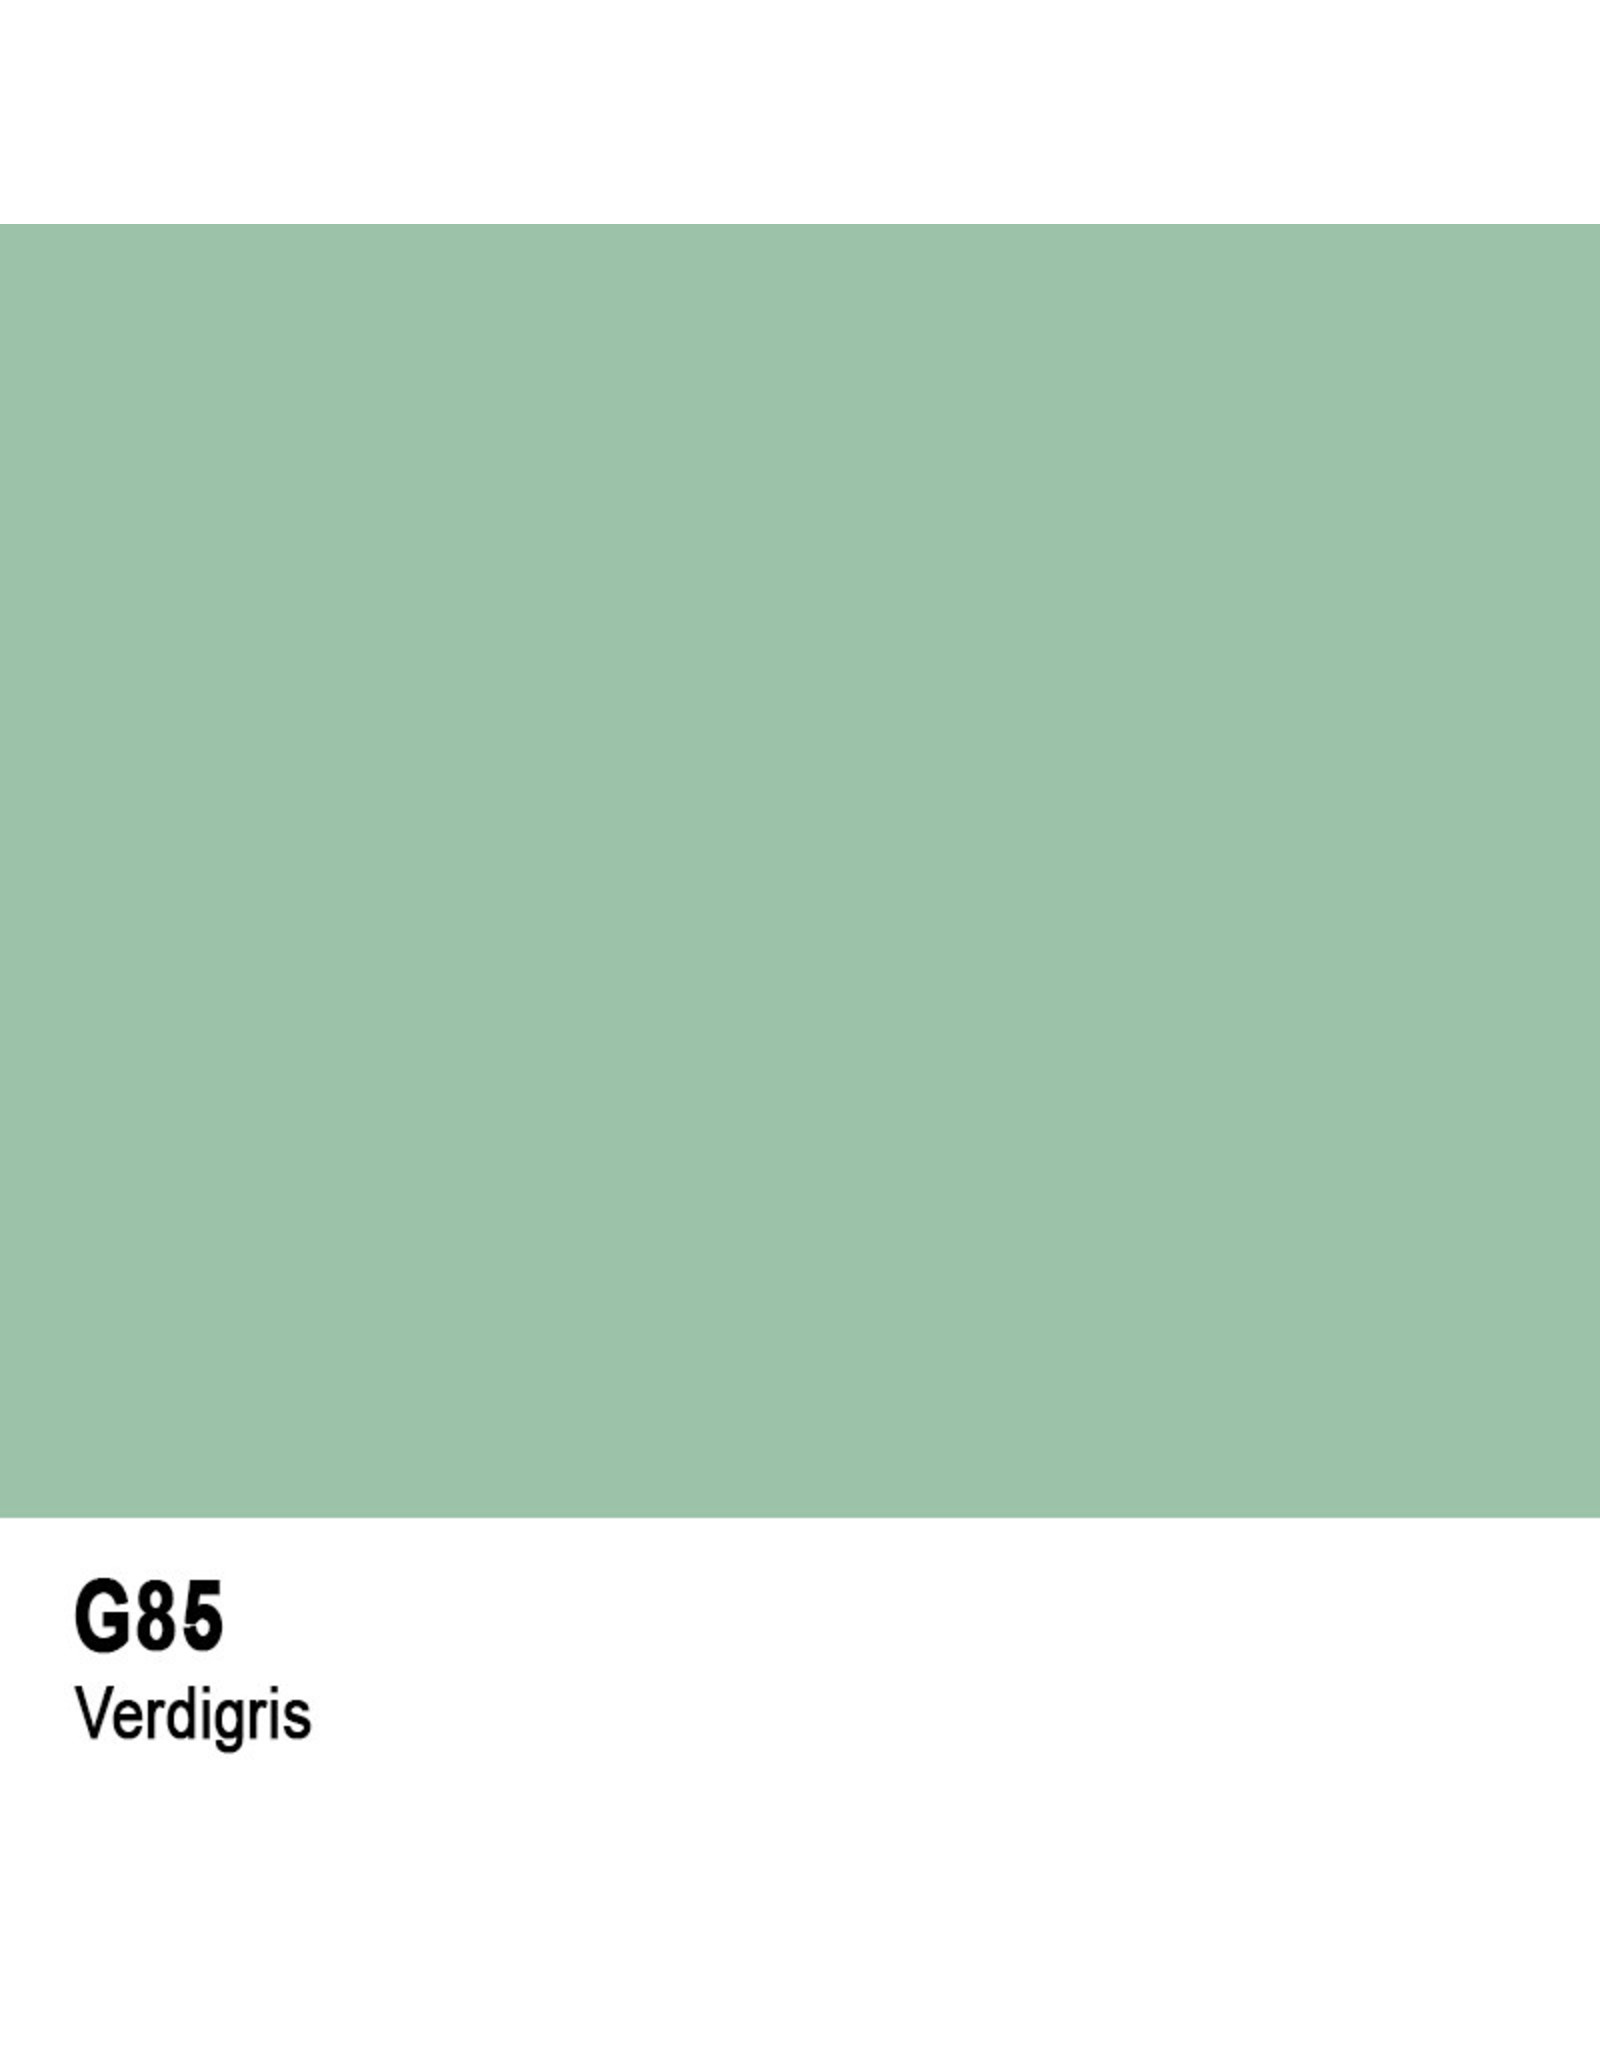 COPIC COPIC G85 VERDIGRIS REFILL